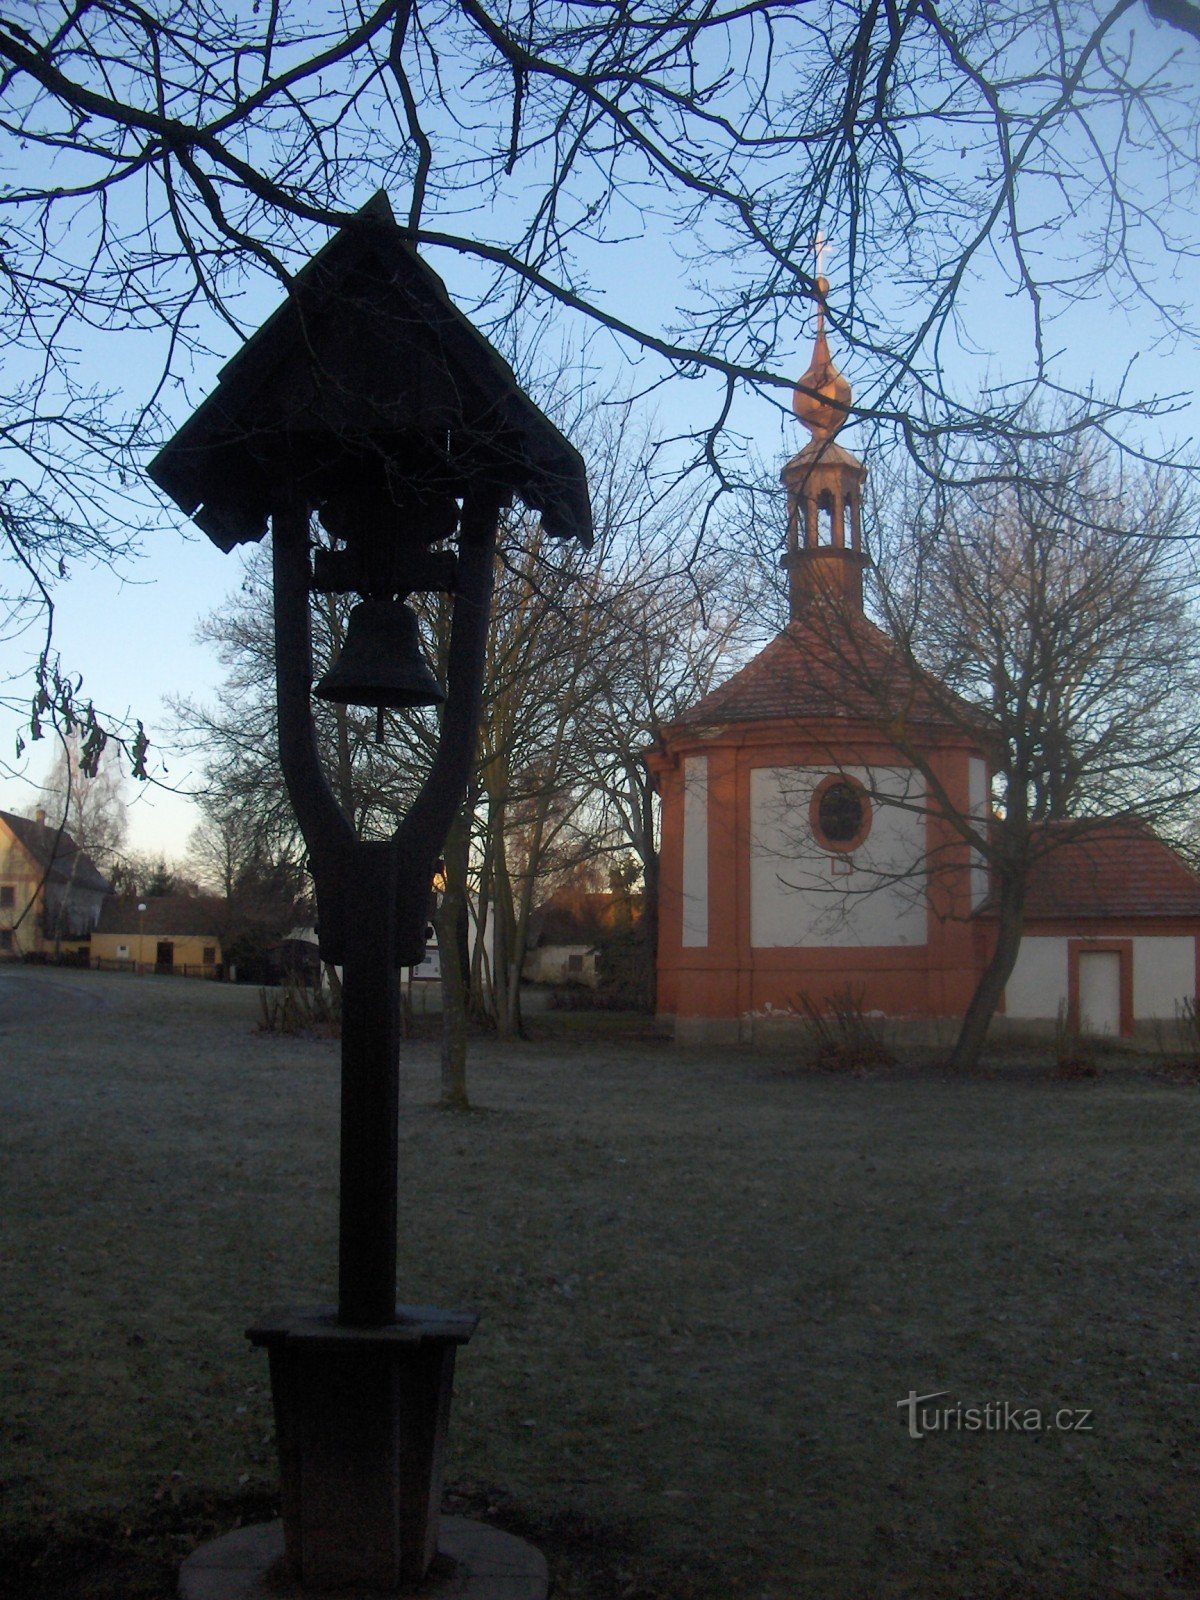 nhà thờ st. Martina và chiếc chuông gỗ